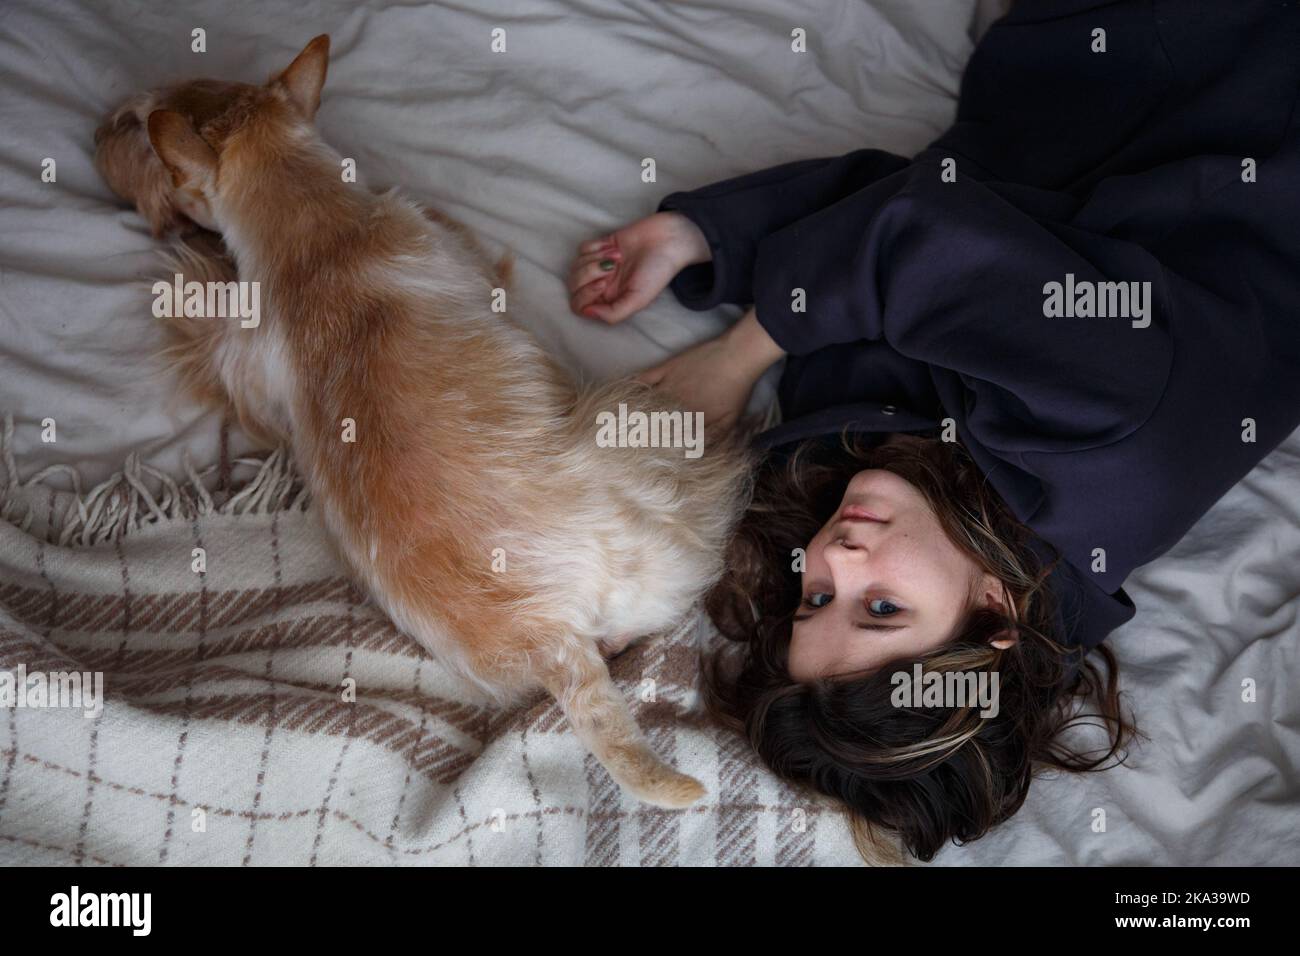 La ragazza e il cane si stendono sul letto, vista dall'alto Foto Stock